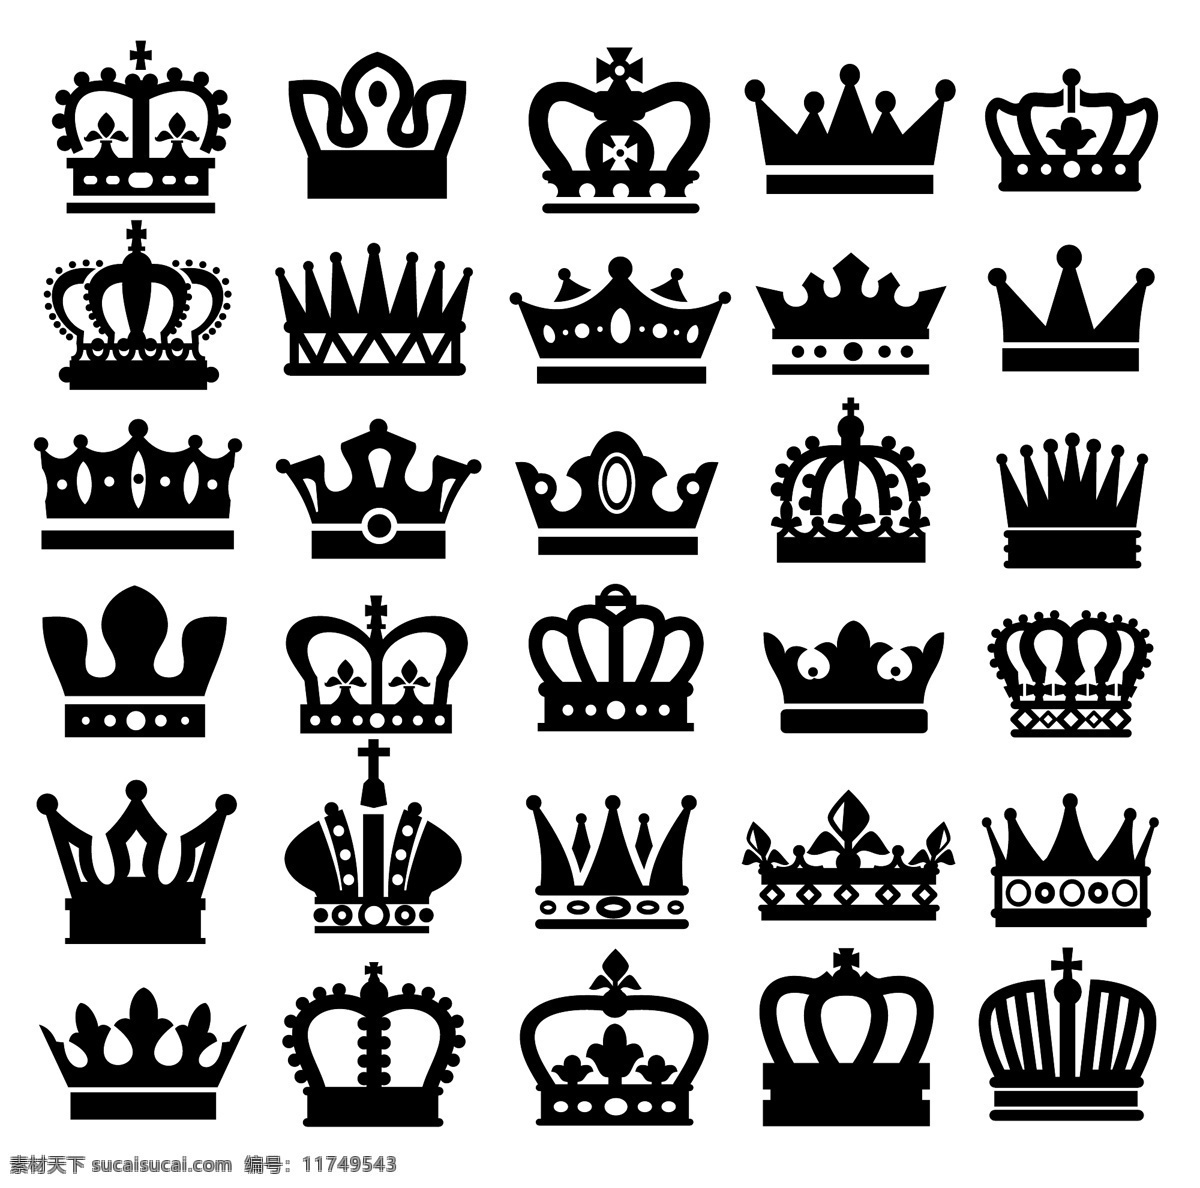 皇冠 王冠皇冠 王冠 k king 皇族 贵族 王室 国王 小图标 小标志 图标 logo 标志 vi icon 标识 图标设计 logo设计 标志设计 标识设计 矢量设计 矢量图标 欧美图标 欧美设计 其他图标 标志图标